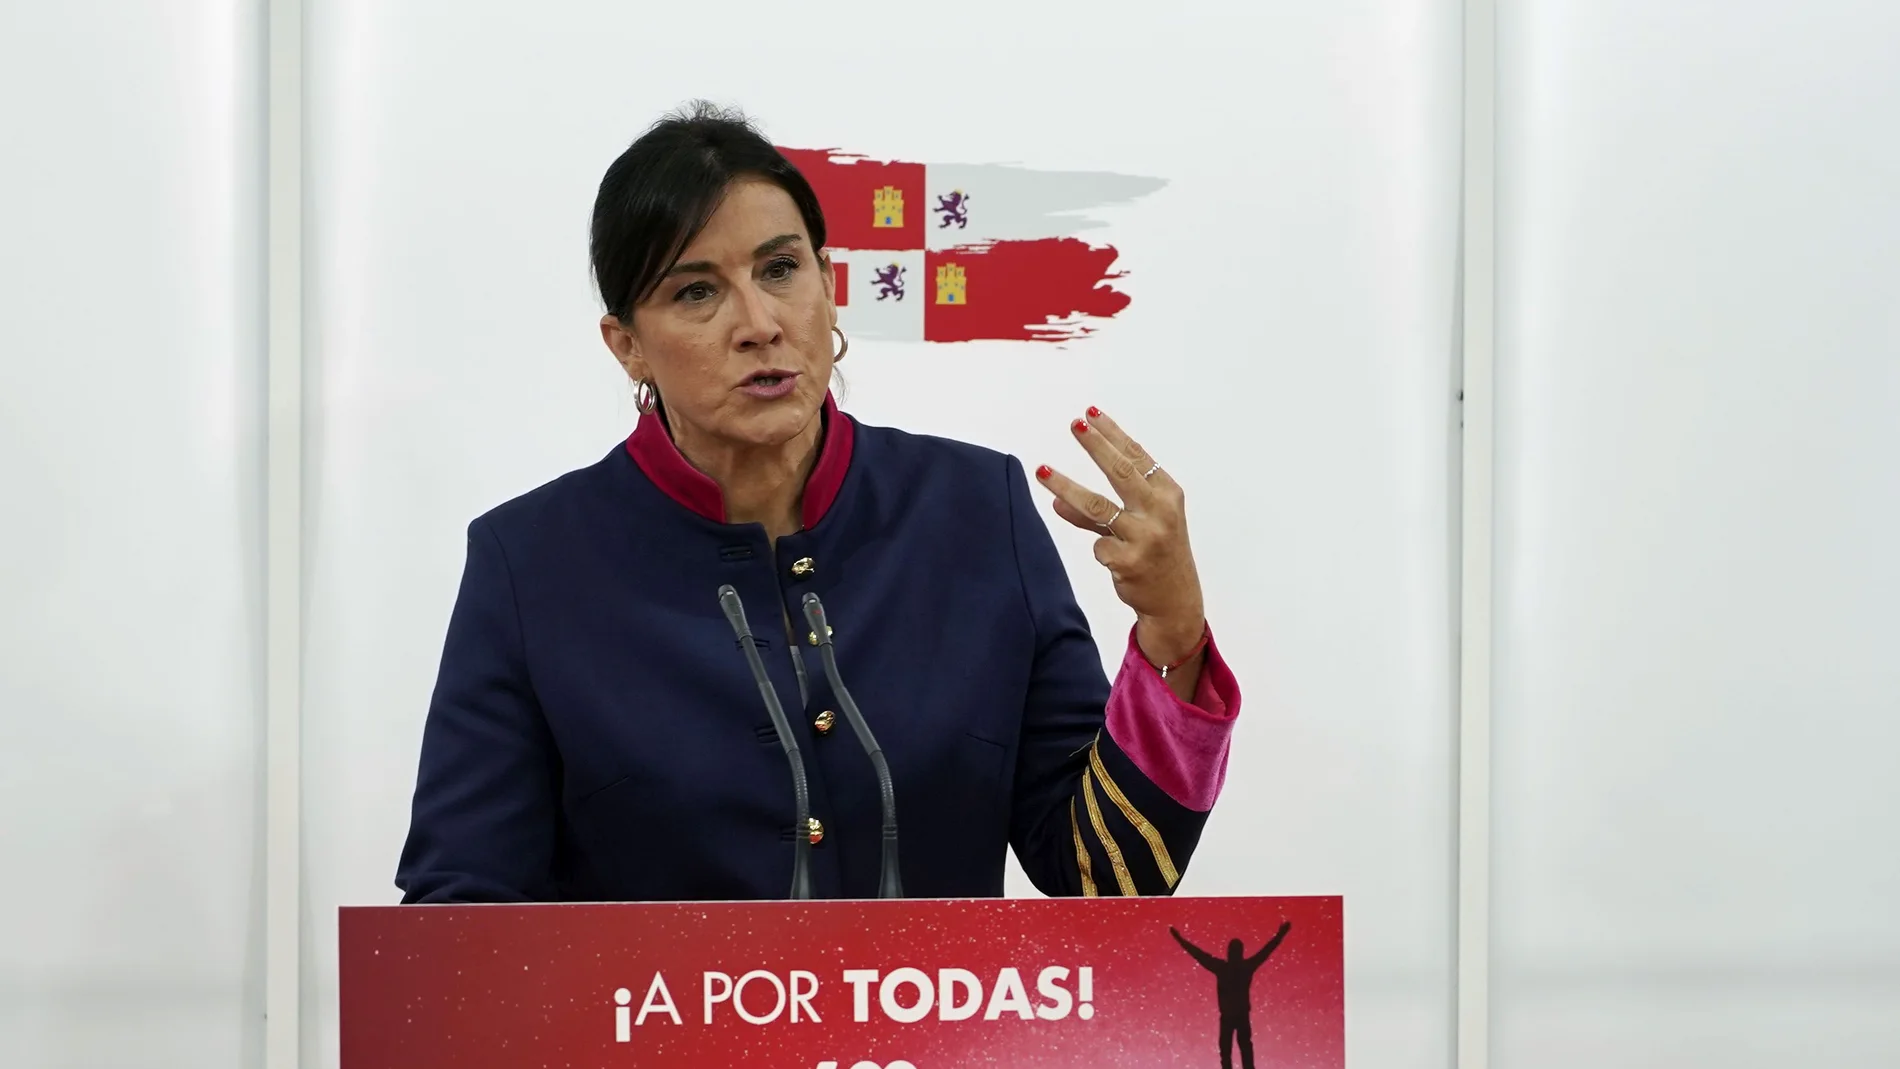 La secretaria de Organización del PSOE de Castilla y León, Ana Sánchez, atiende a la prensa